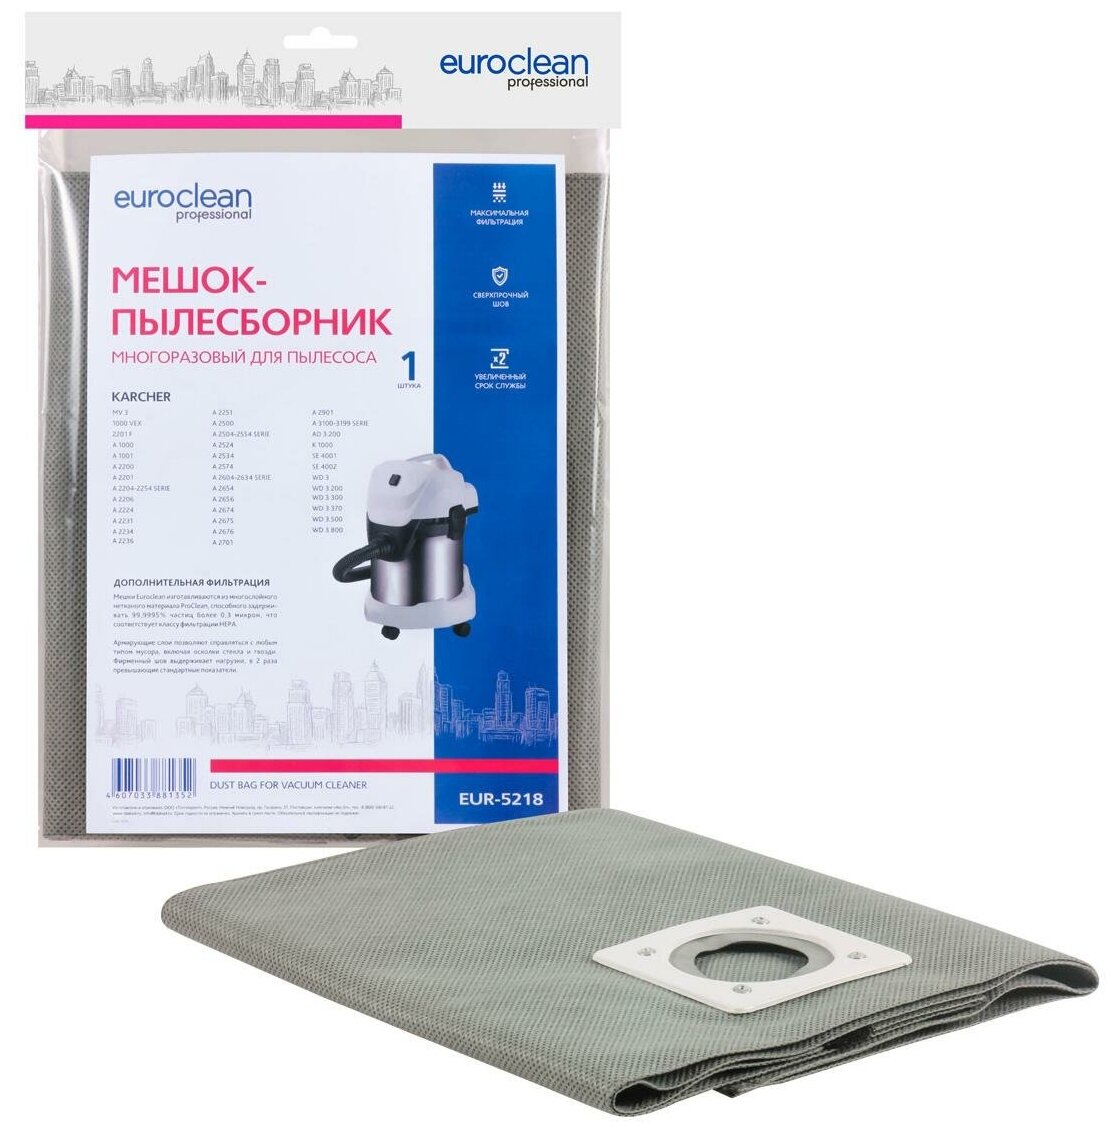 Euroclean EUR-5218 мешок-пылесборник